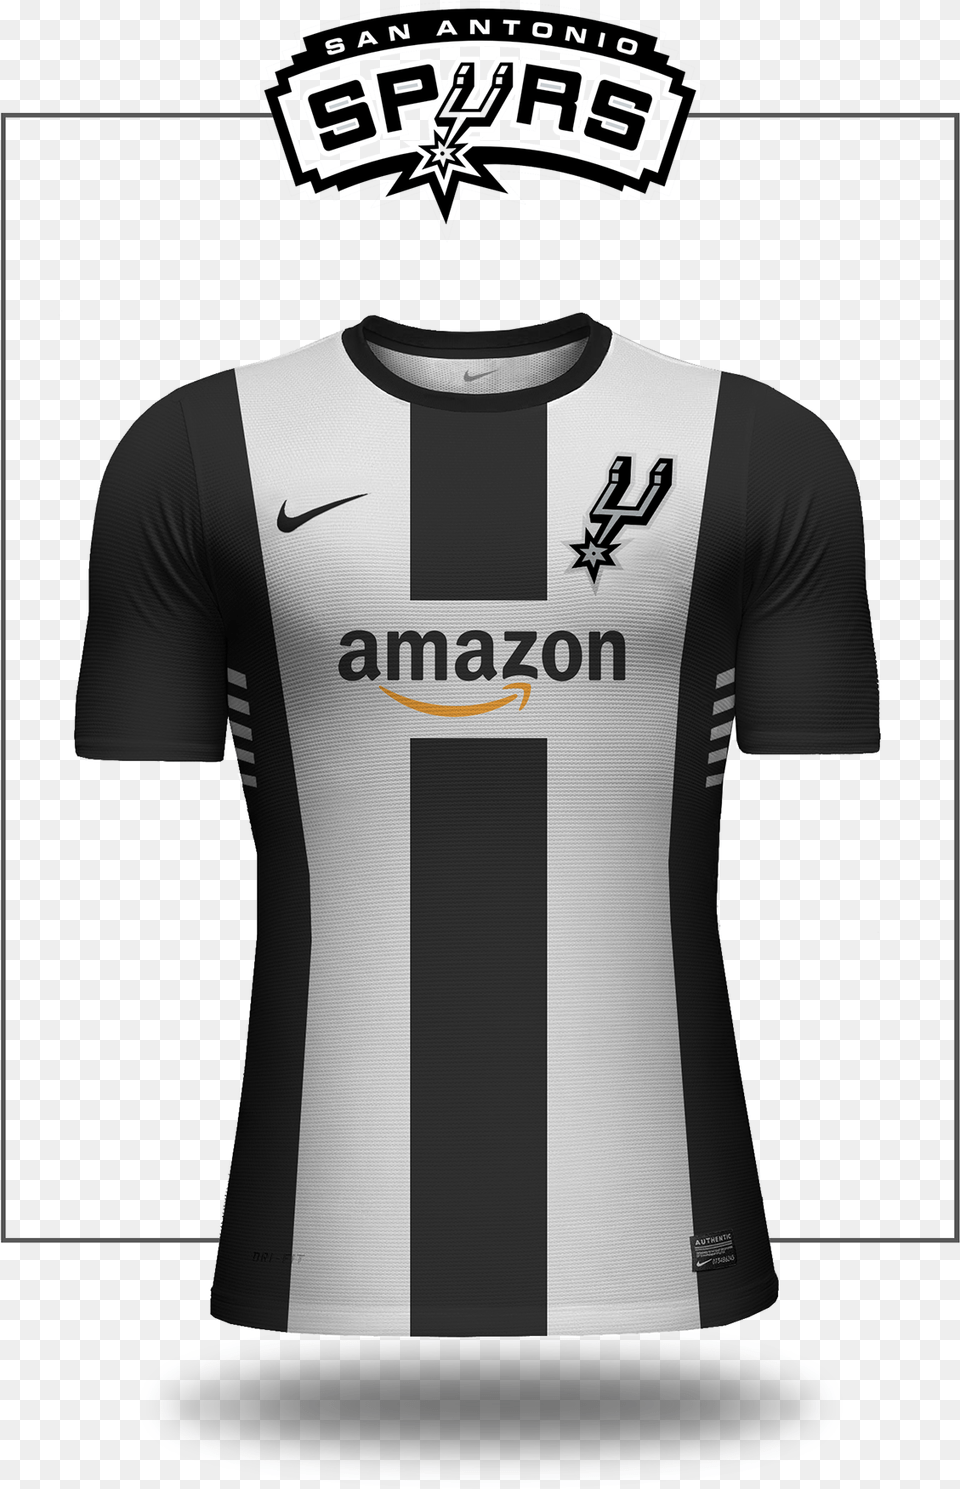 San Antonio Spurs Logo, Clothing, Shirt, T-shirt, Jersey Png Image